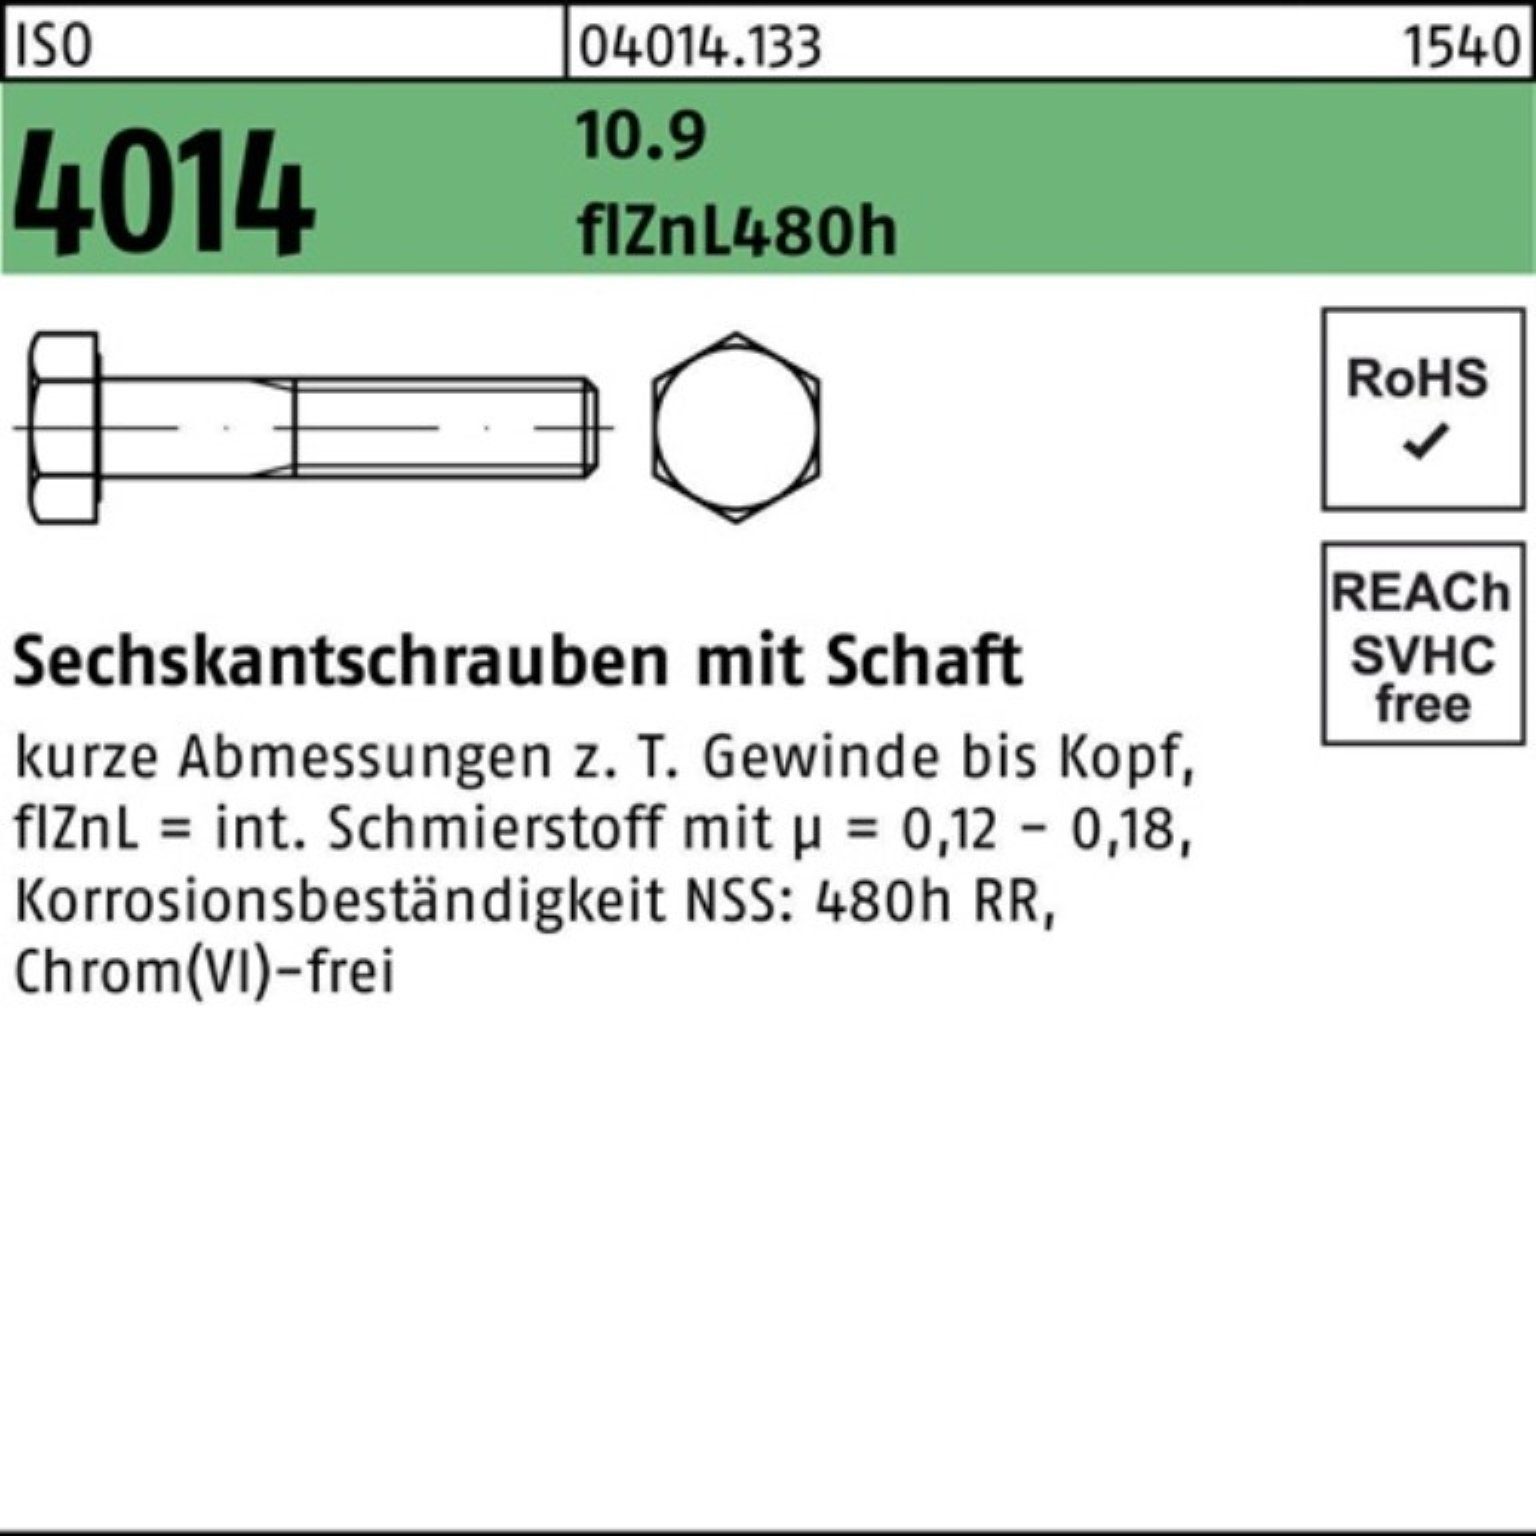 Bufab Sechskantschraube 100er 4014 zinklamelle 10.9 M10x Schaft Pack 120 Sechskantschraube ISO